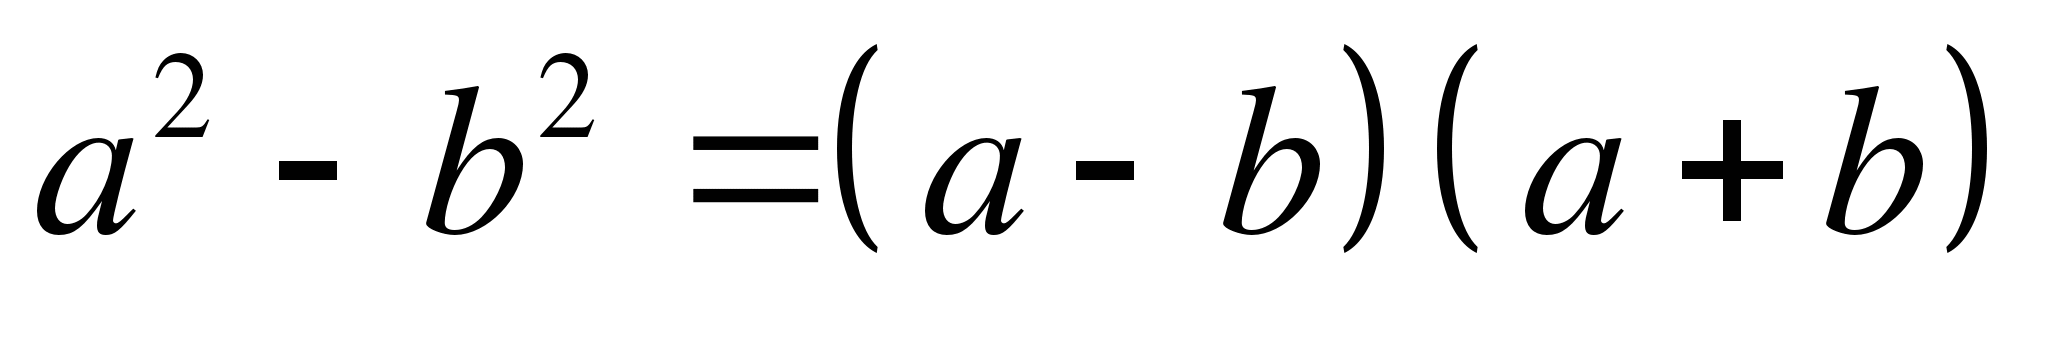 Применение формул сокращенного умножения для вычисления квадратов чисел